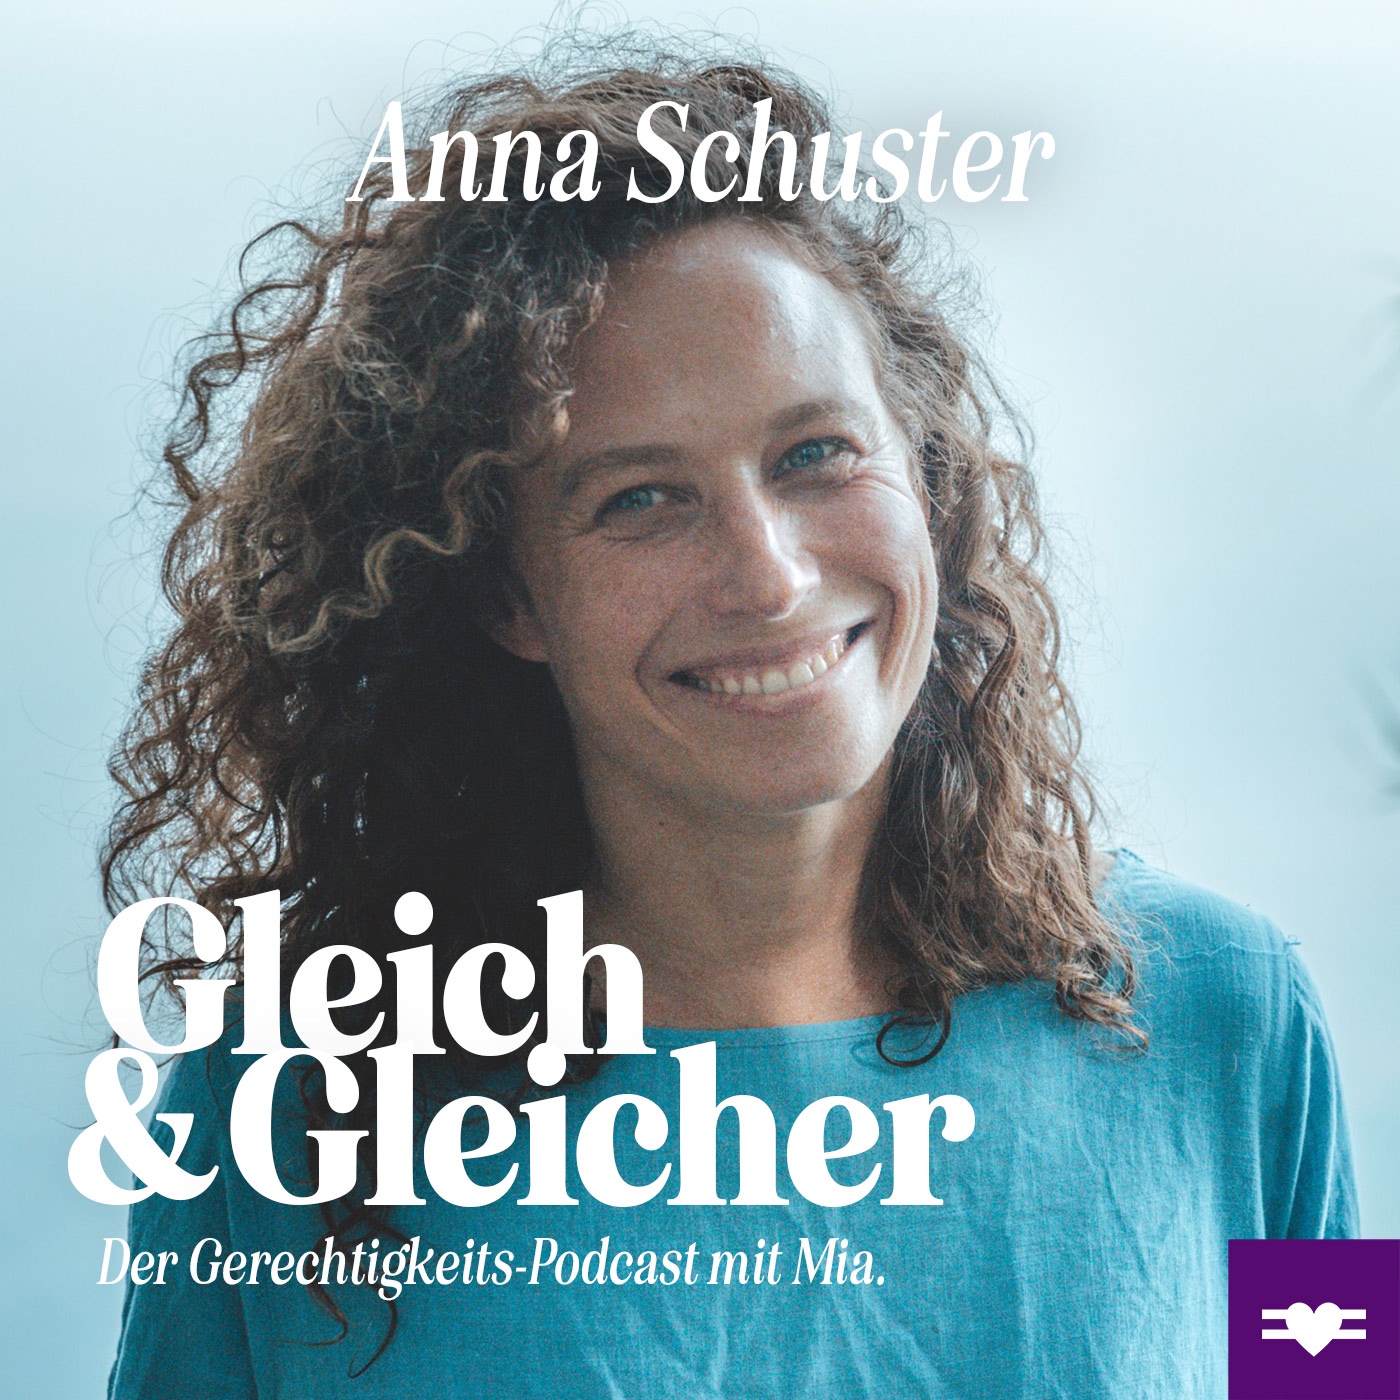 Anna Schuster über Wildpflanzen, Biologie & Gerechtigkeit